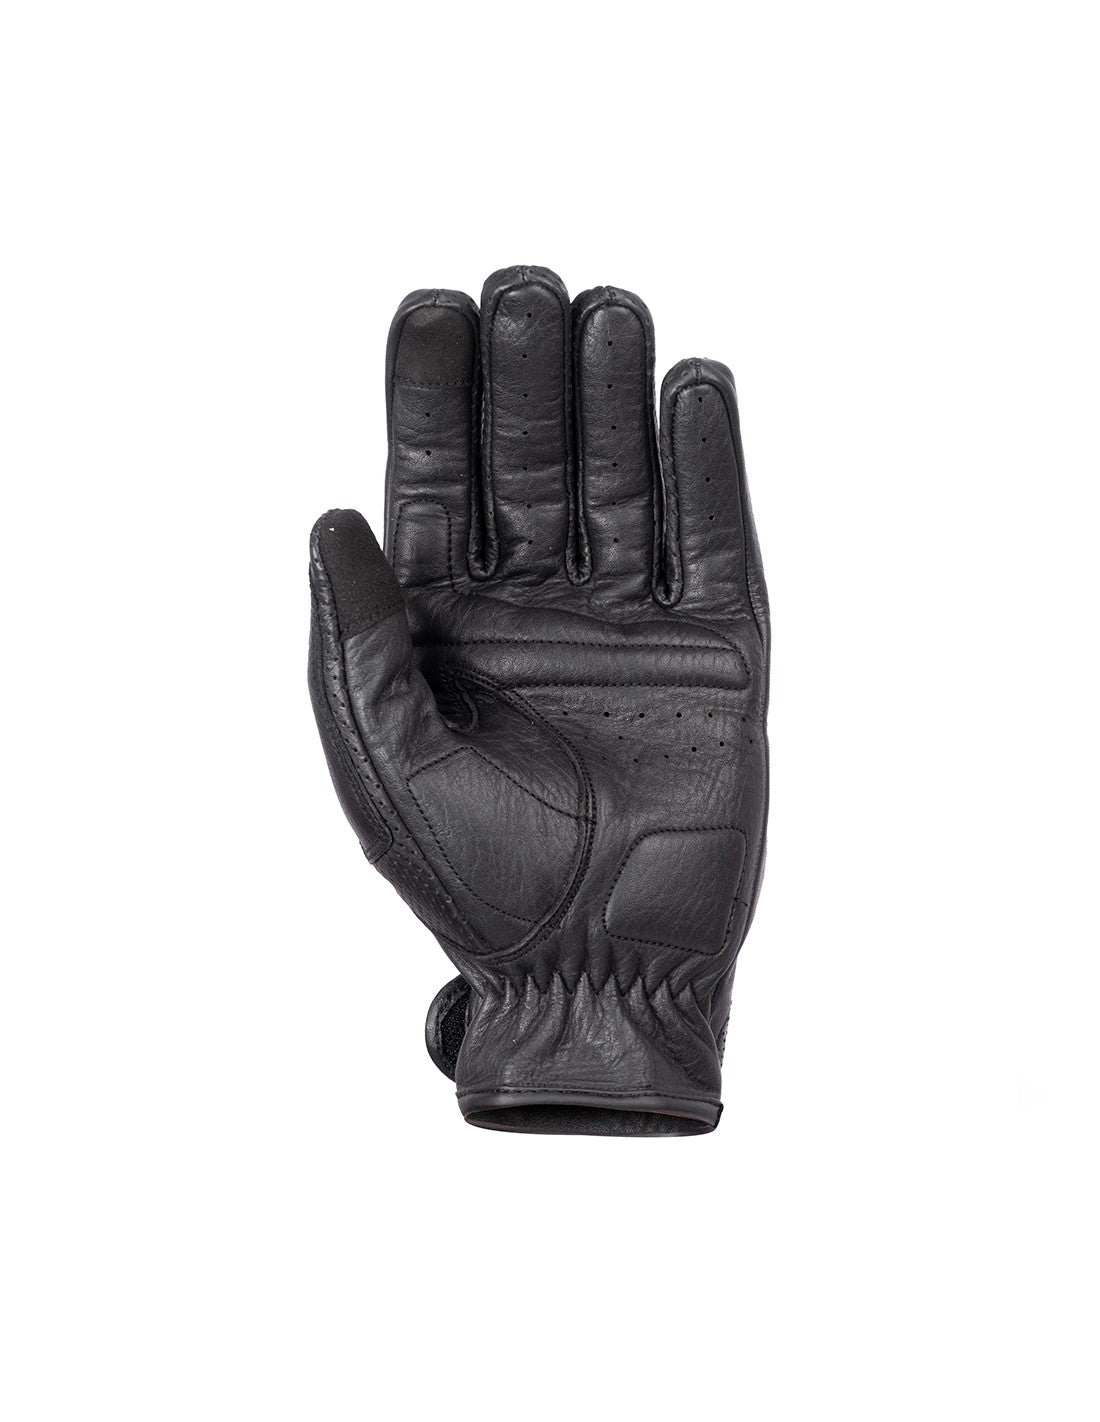 BELA Impact Lady - Gloves - Black MaximomotoUK